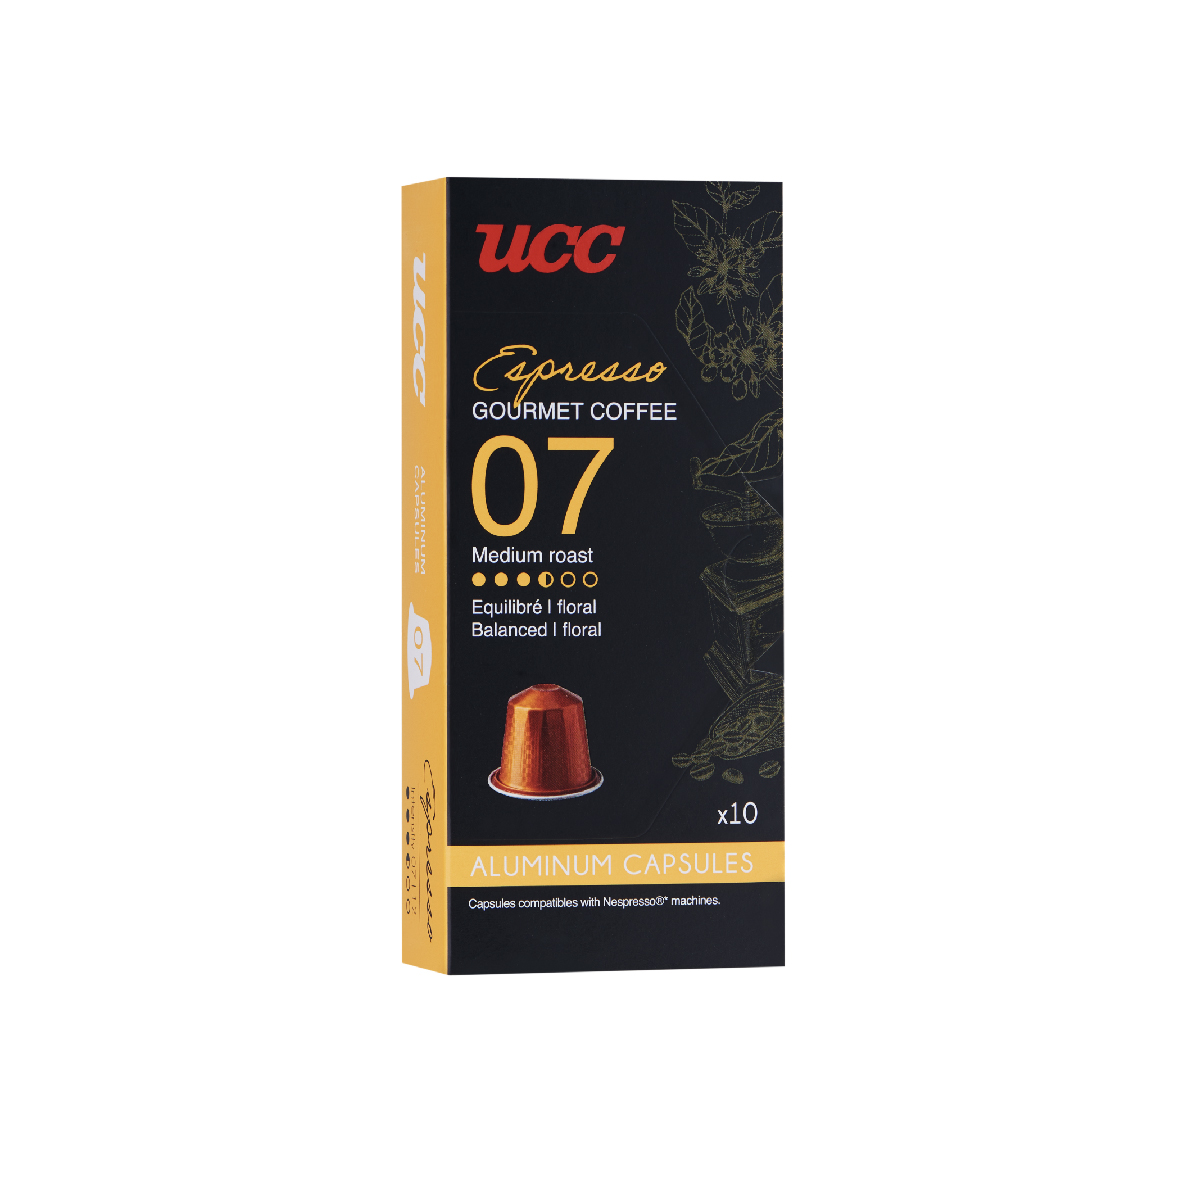 UCC Gourmet Coffee Espresso